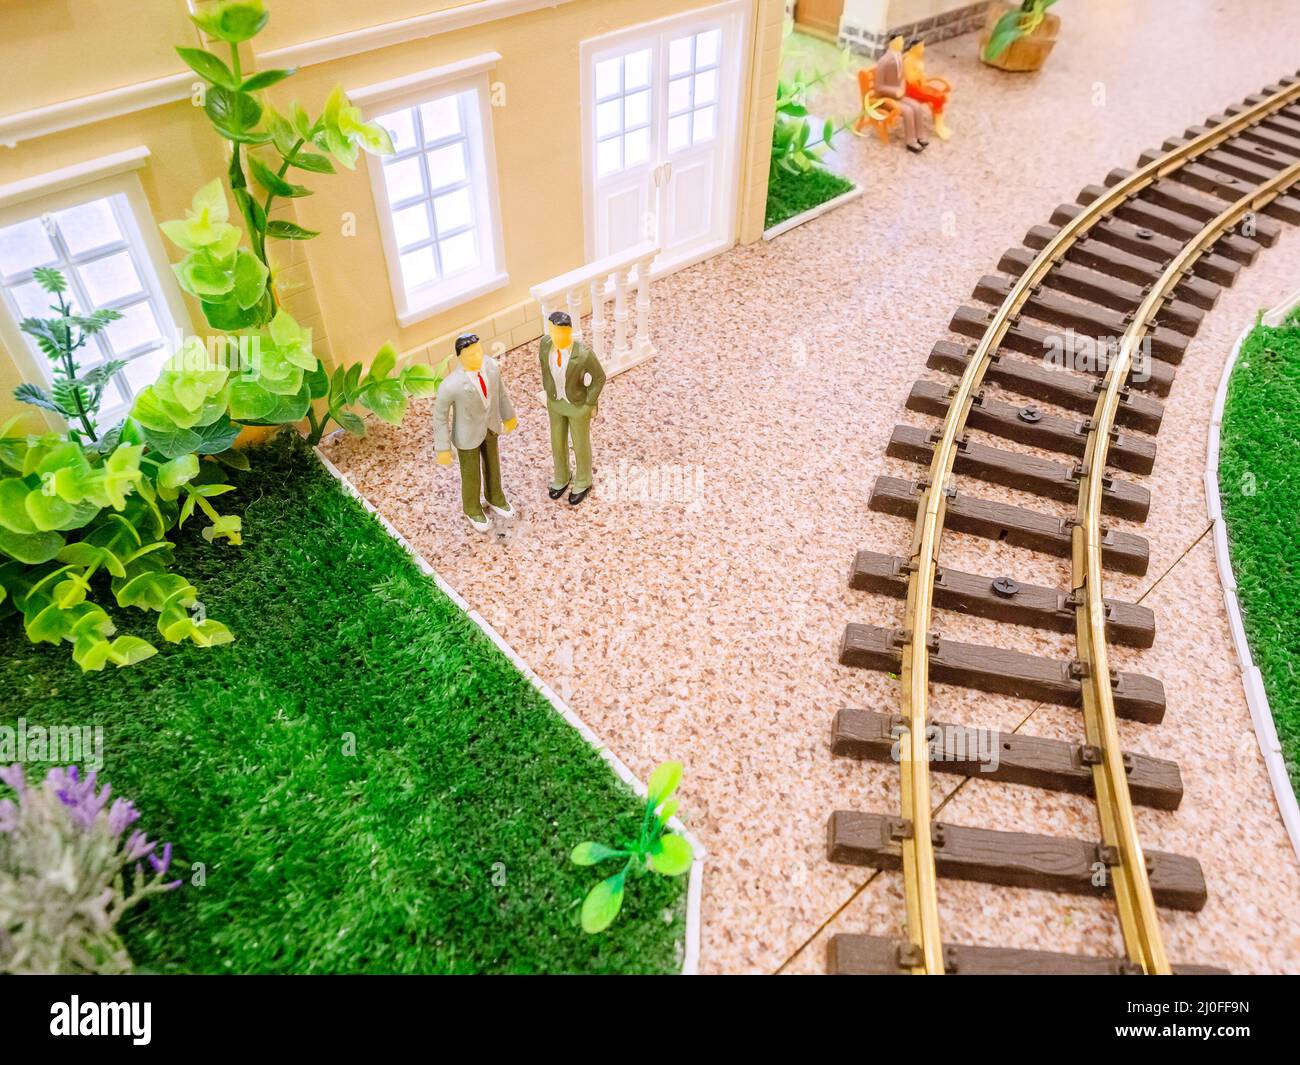 Chemin de fer jouet avec une pelouse, une maison miniature et de petits hommes Banque D'Images